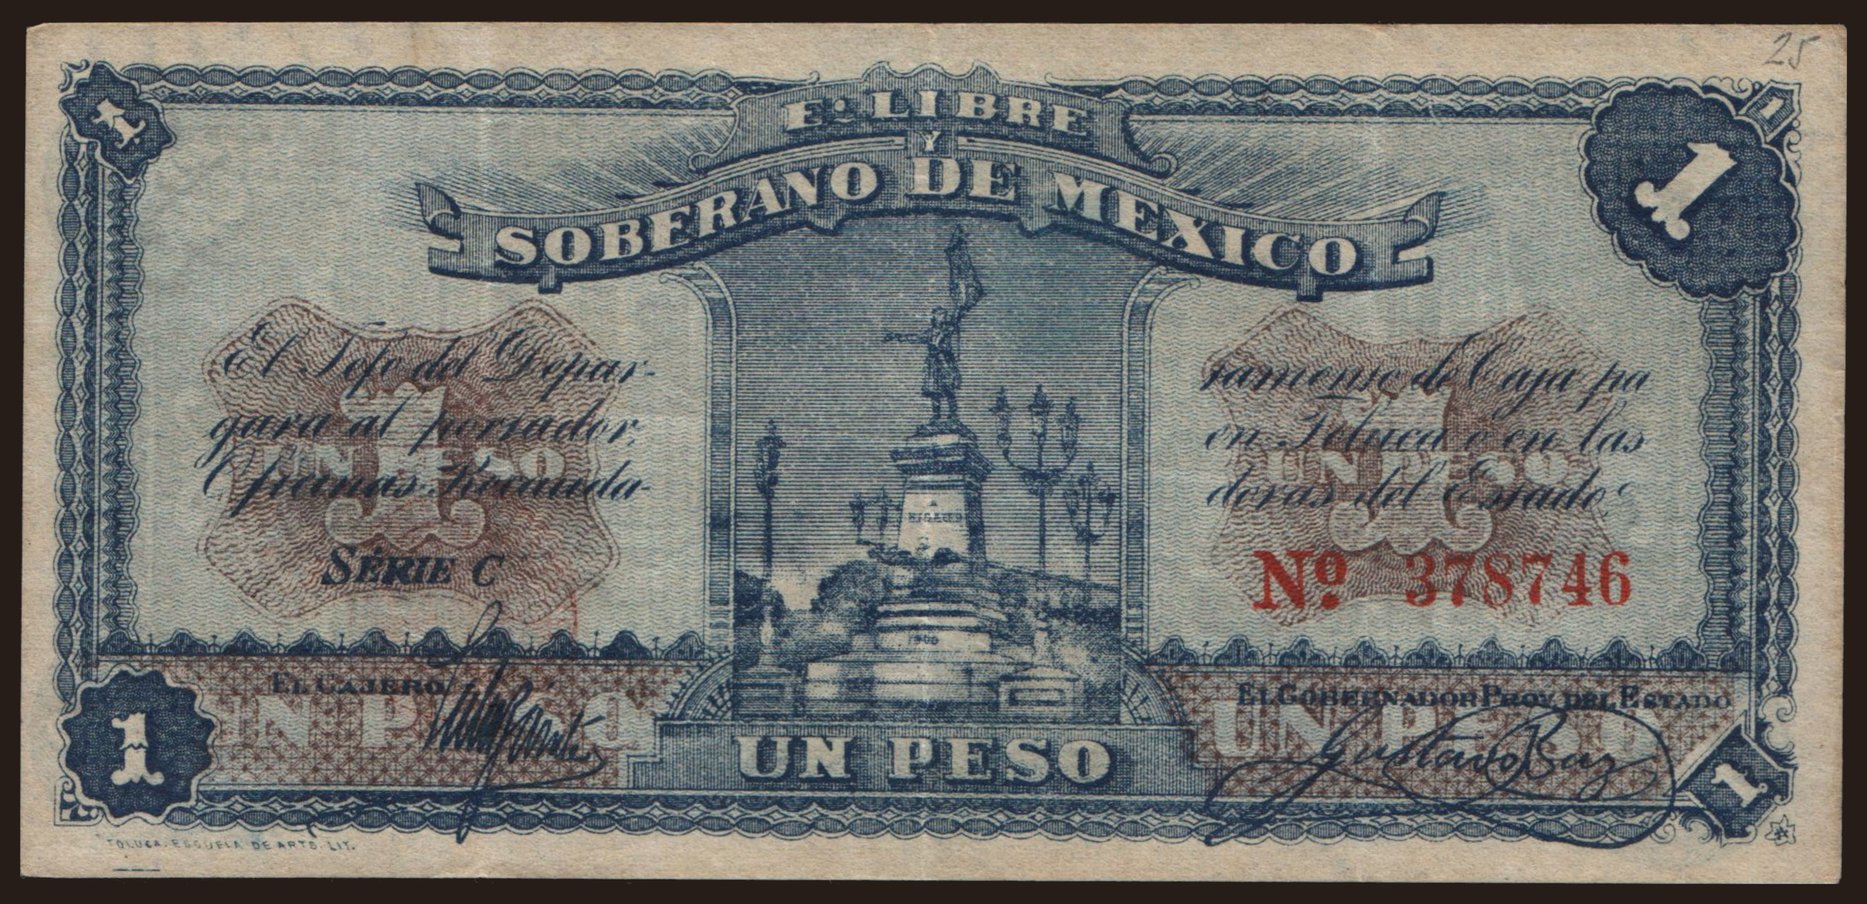 Estado Libre y Soberano de Mexico, Toluca, 1 peso, 1915